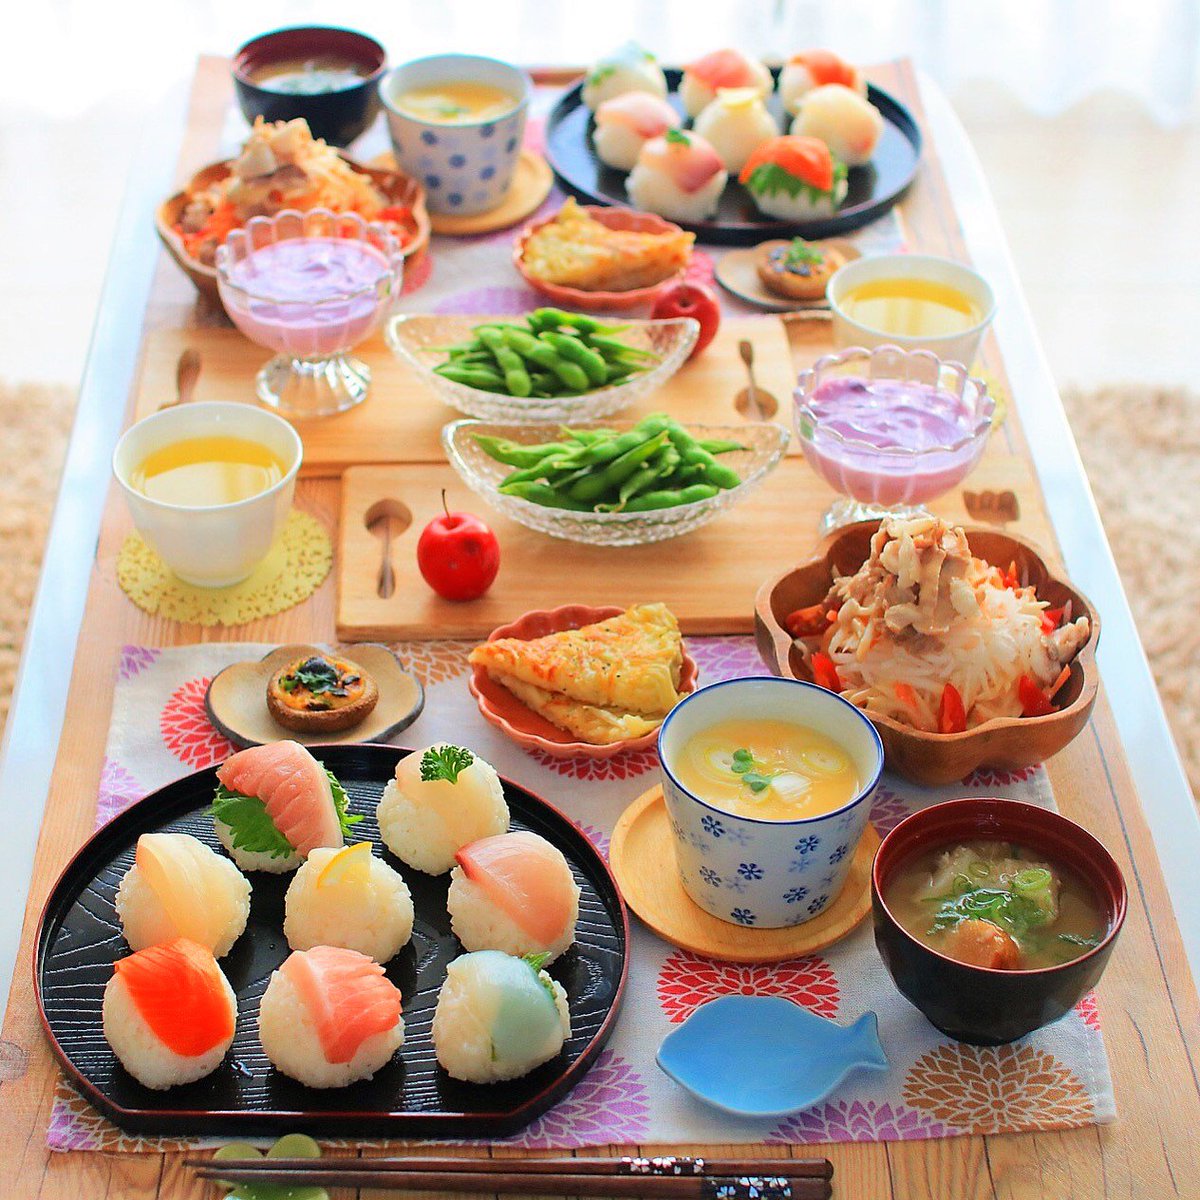 玉の緒の 手まり寿司の手作りランチ 日本料理 手まり寿司 茶碗蒸し みそ汁 大根サラダ 魚介料理